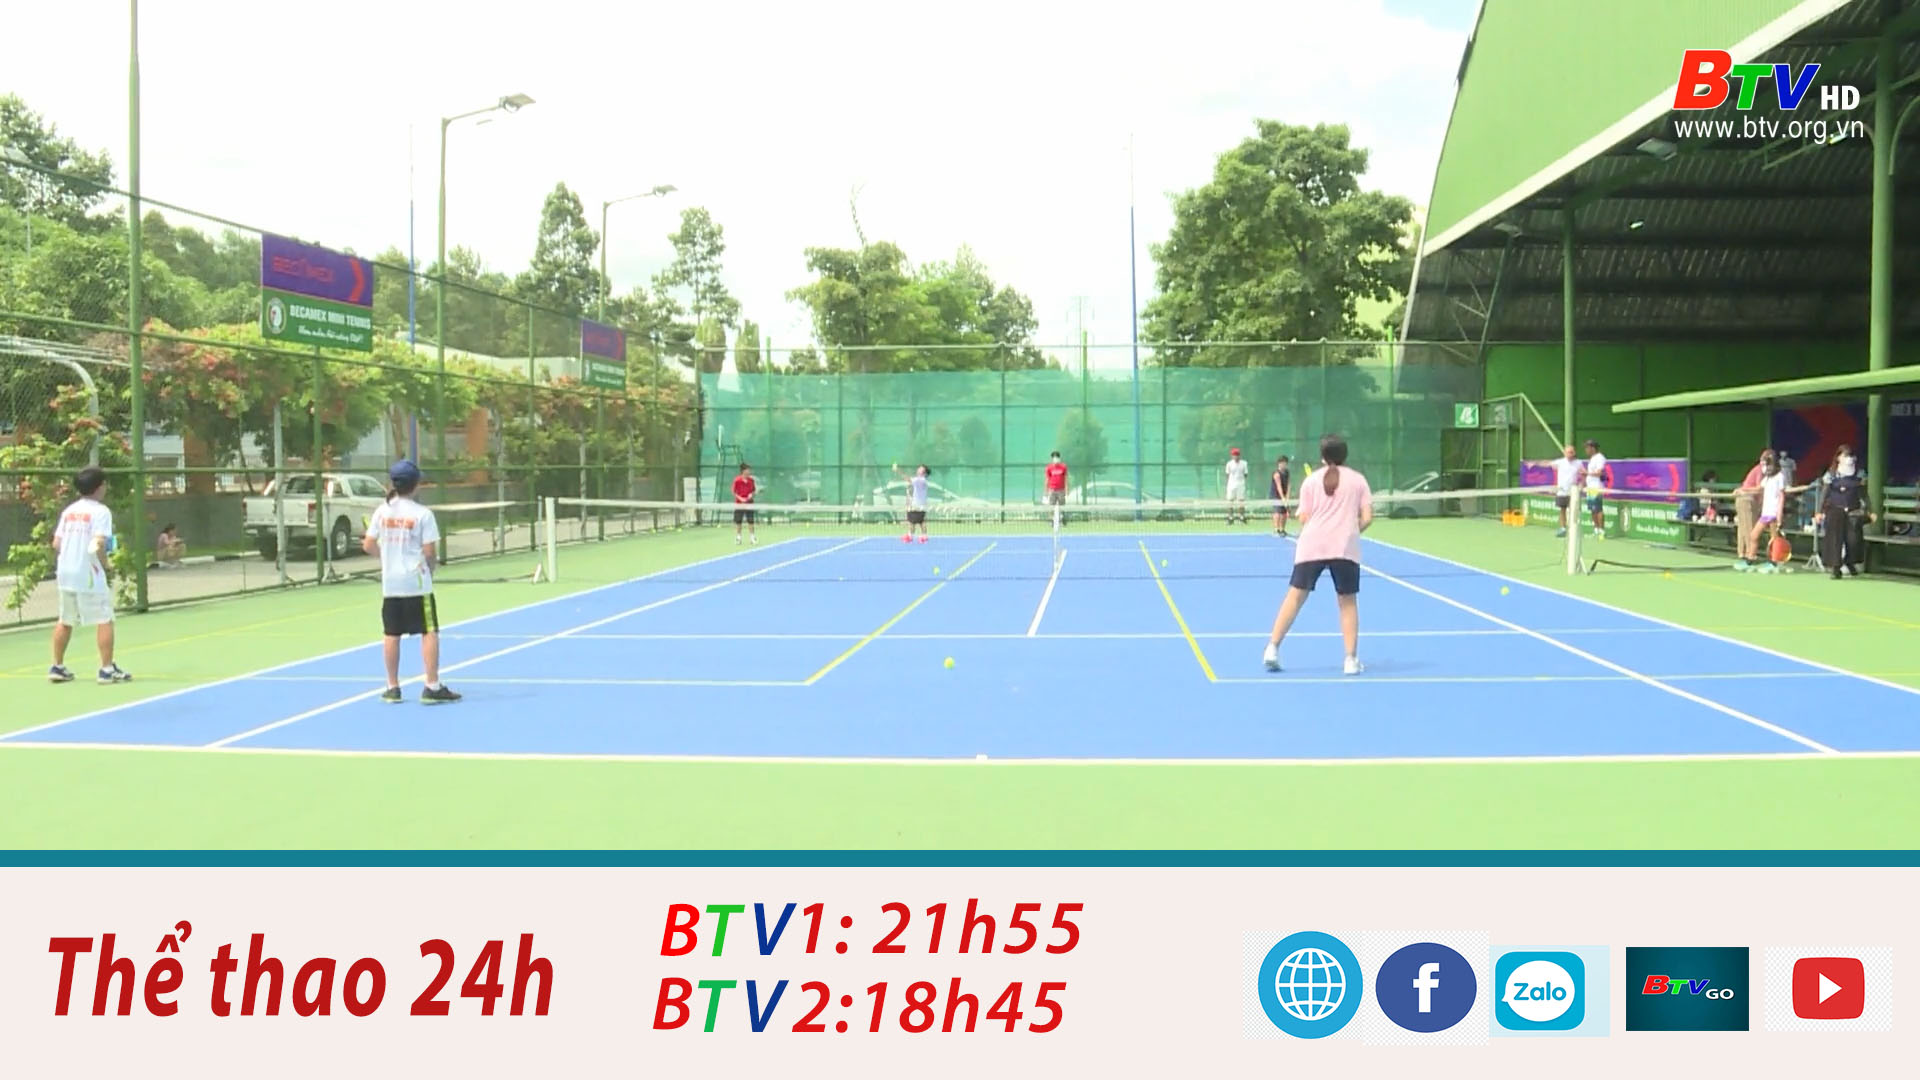 Lớp Tennis cộng đồng - Sân chơi bổ ích cho các em nhỏ